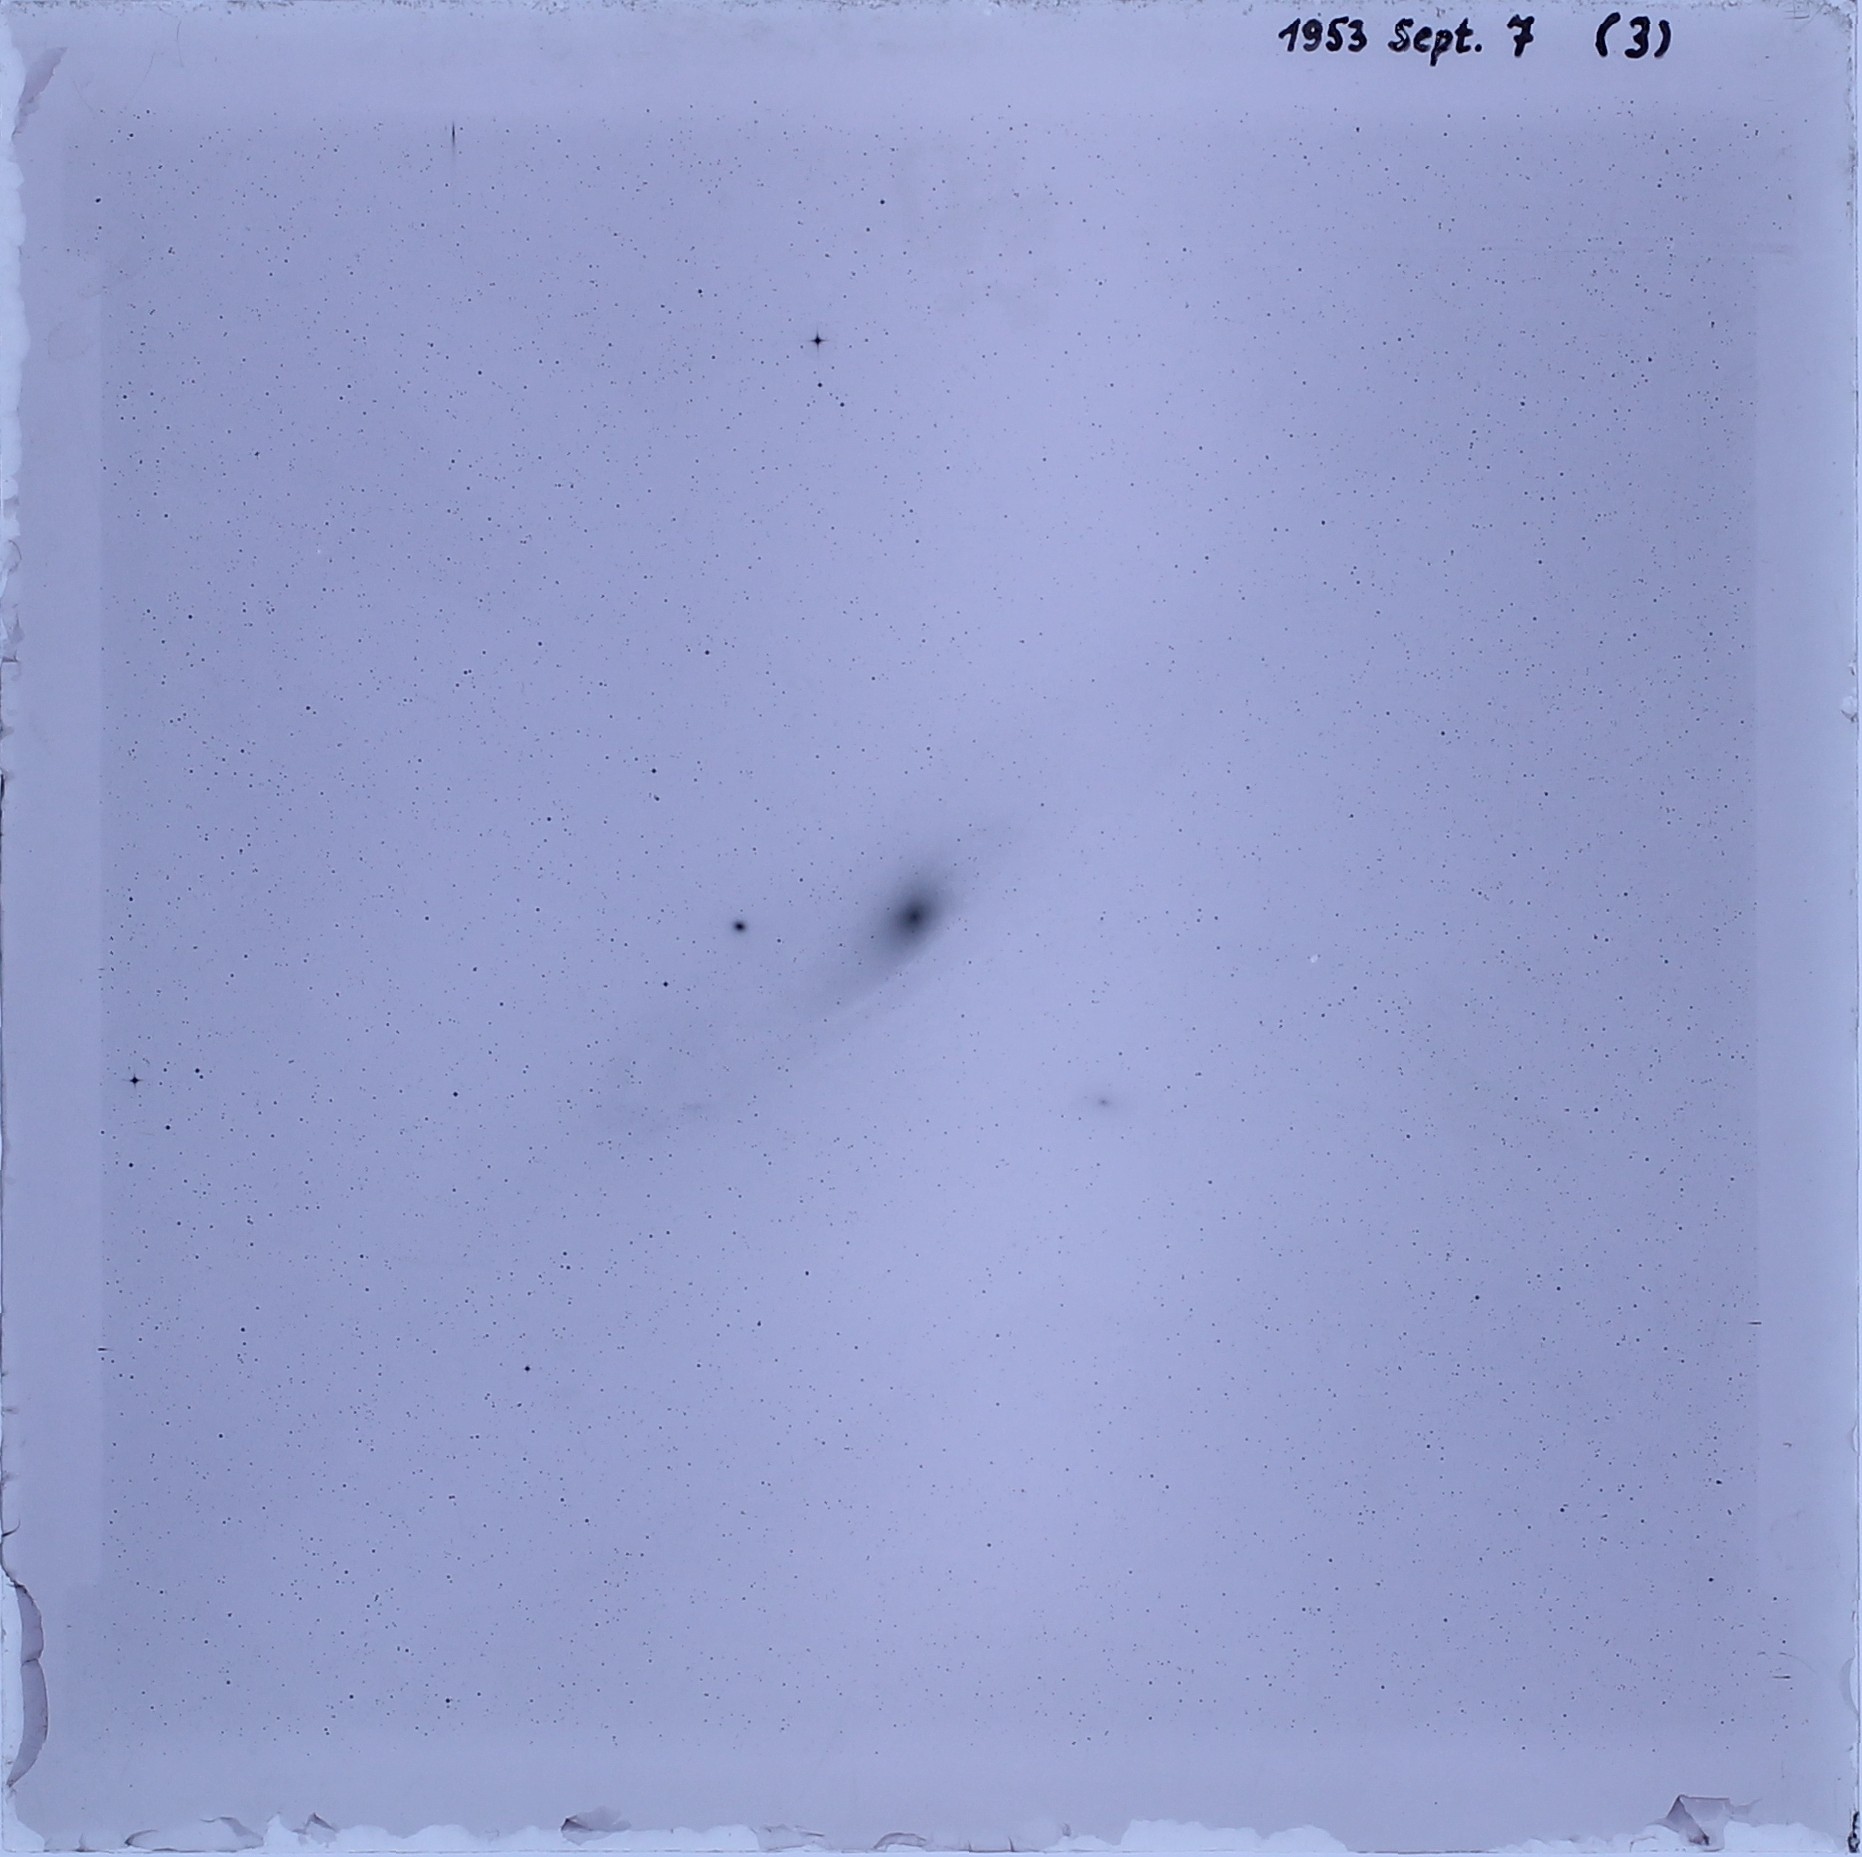 Imagem direta com uma única hora de exposição da Galáxia de Andrômeda (M31) obtida em 7 de setembro de 1953 com a câmera Great Schmidt de 50 cm. (Foto: Reprodução/APPLAUSE)